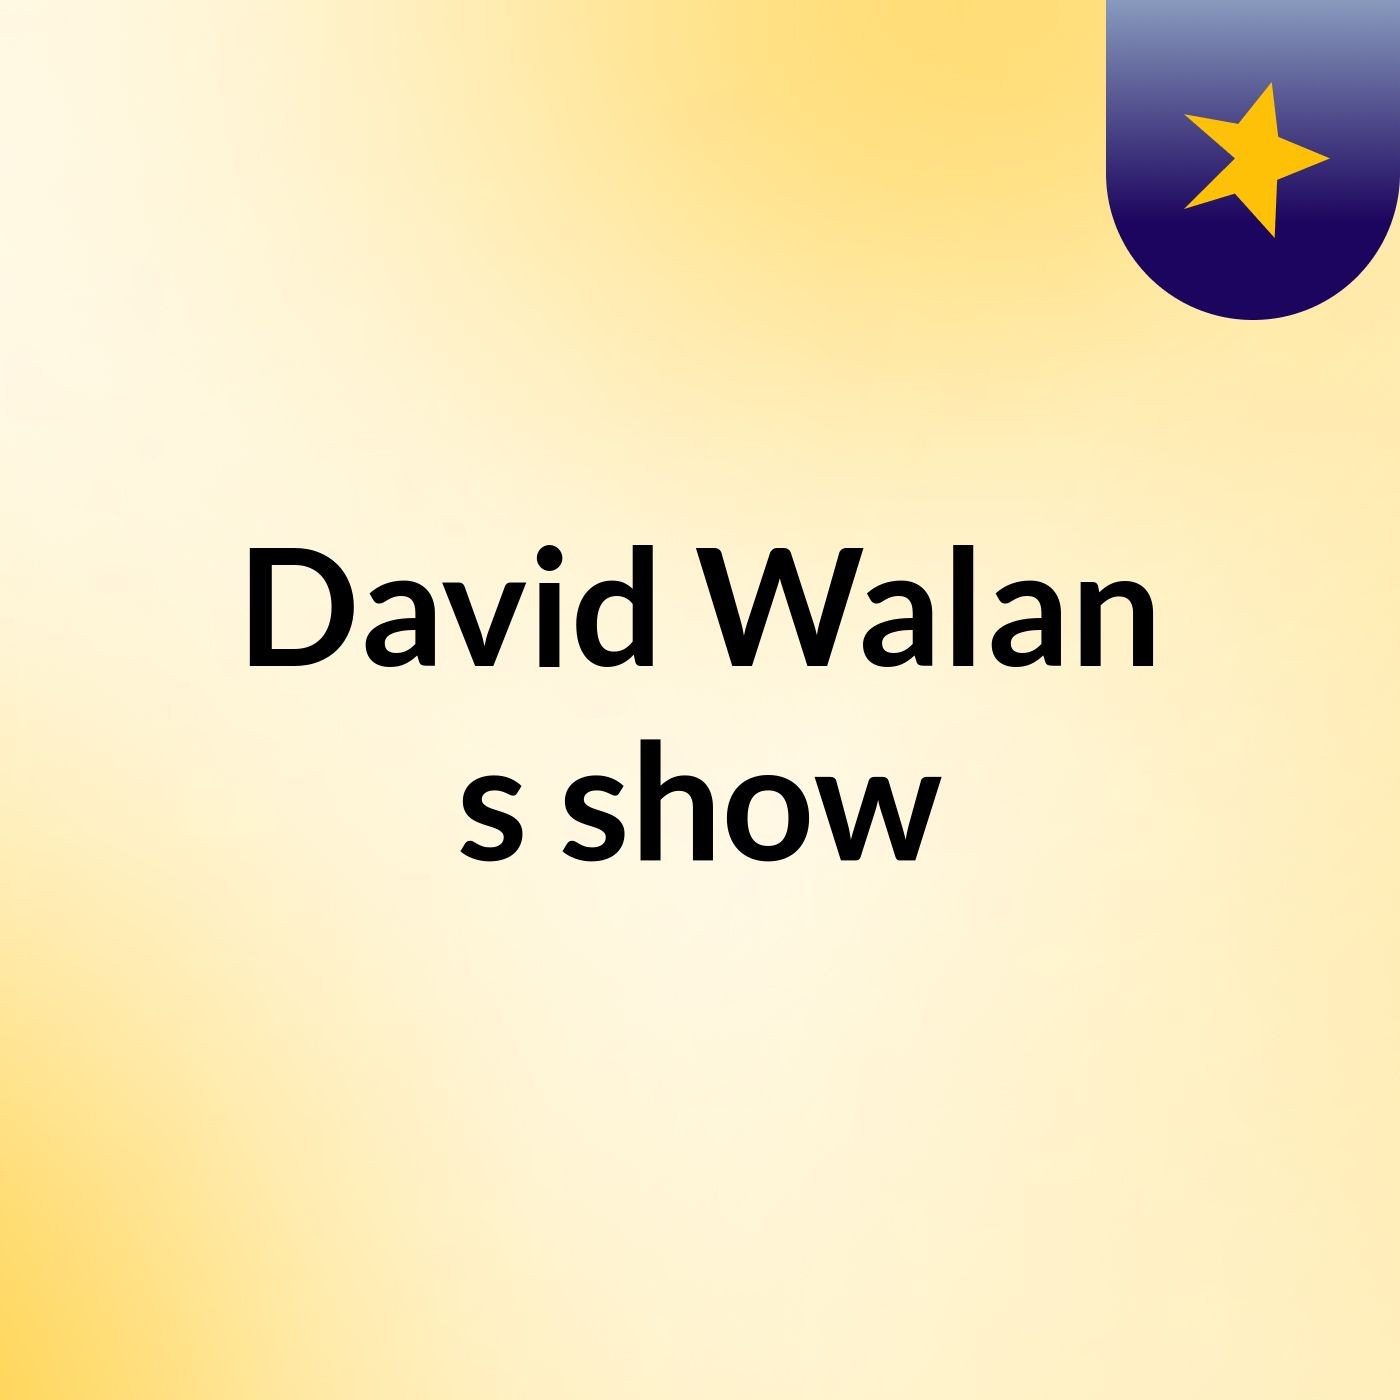 David Walan's show